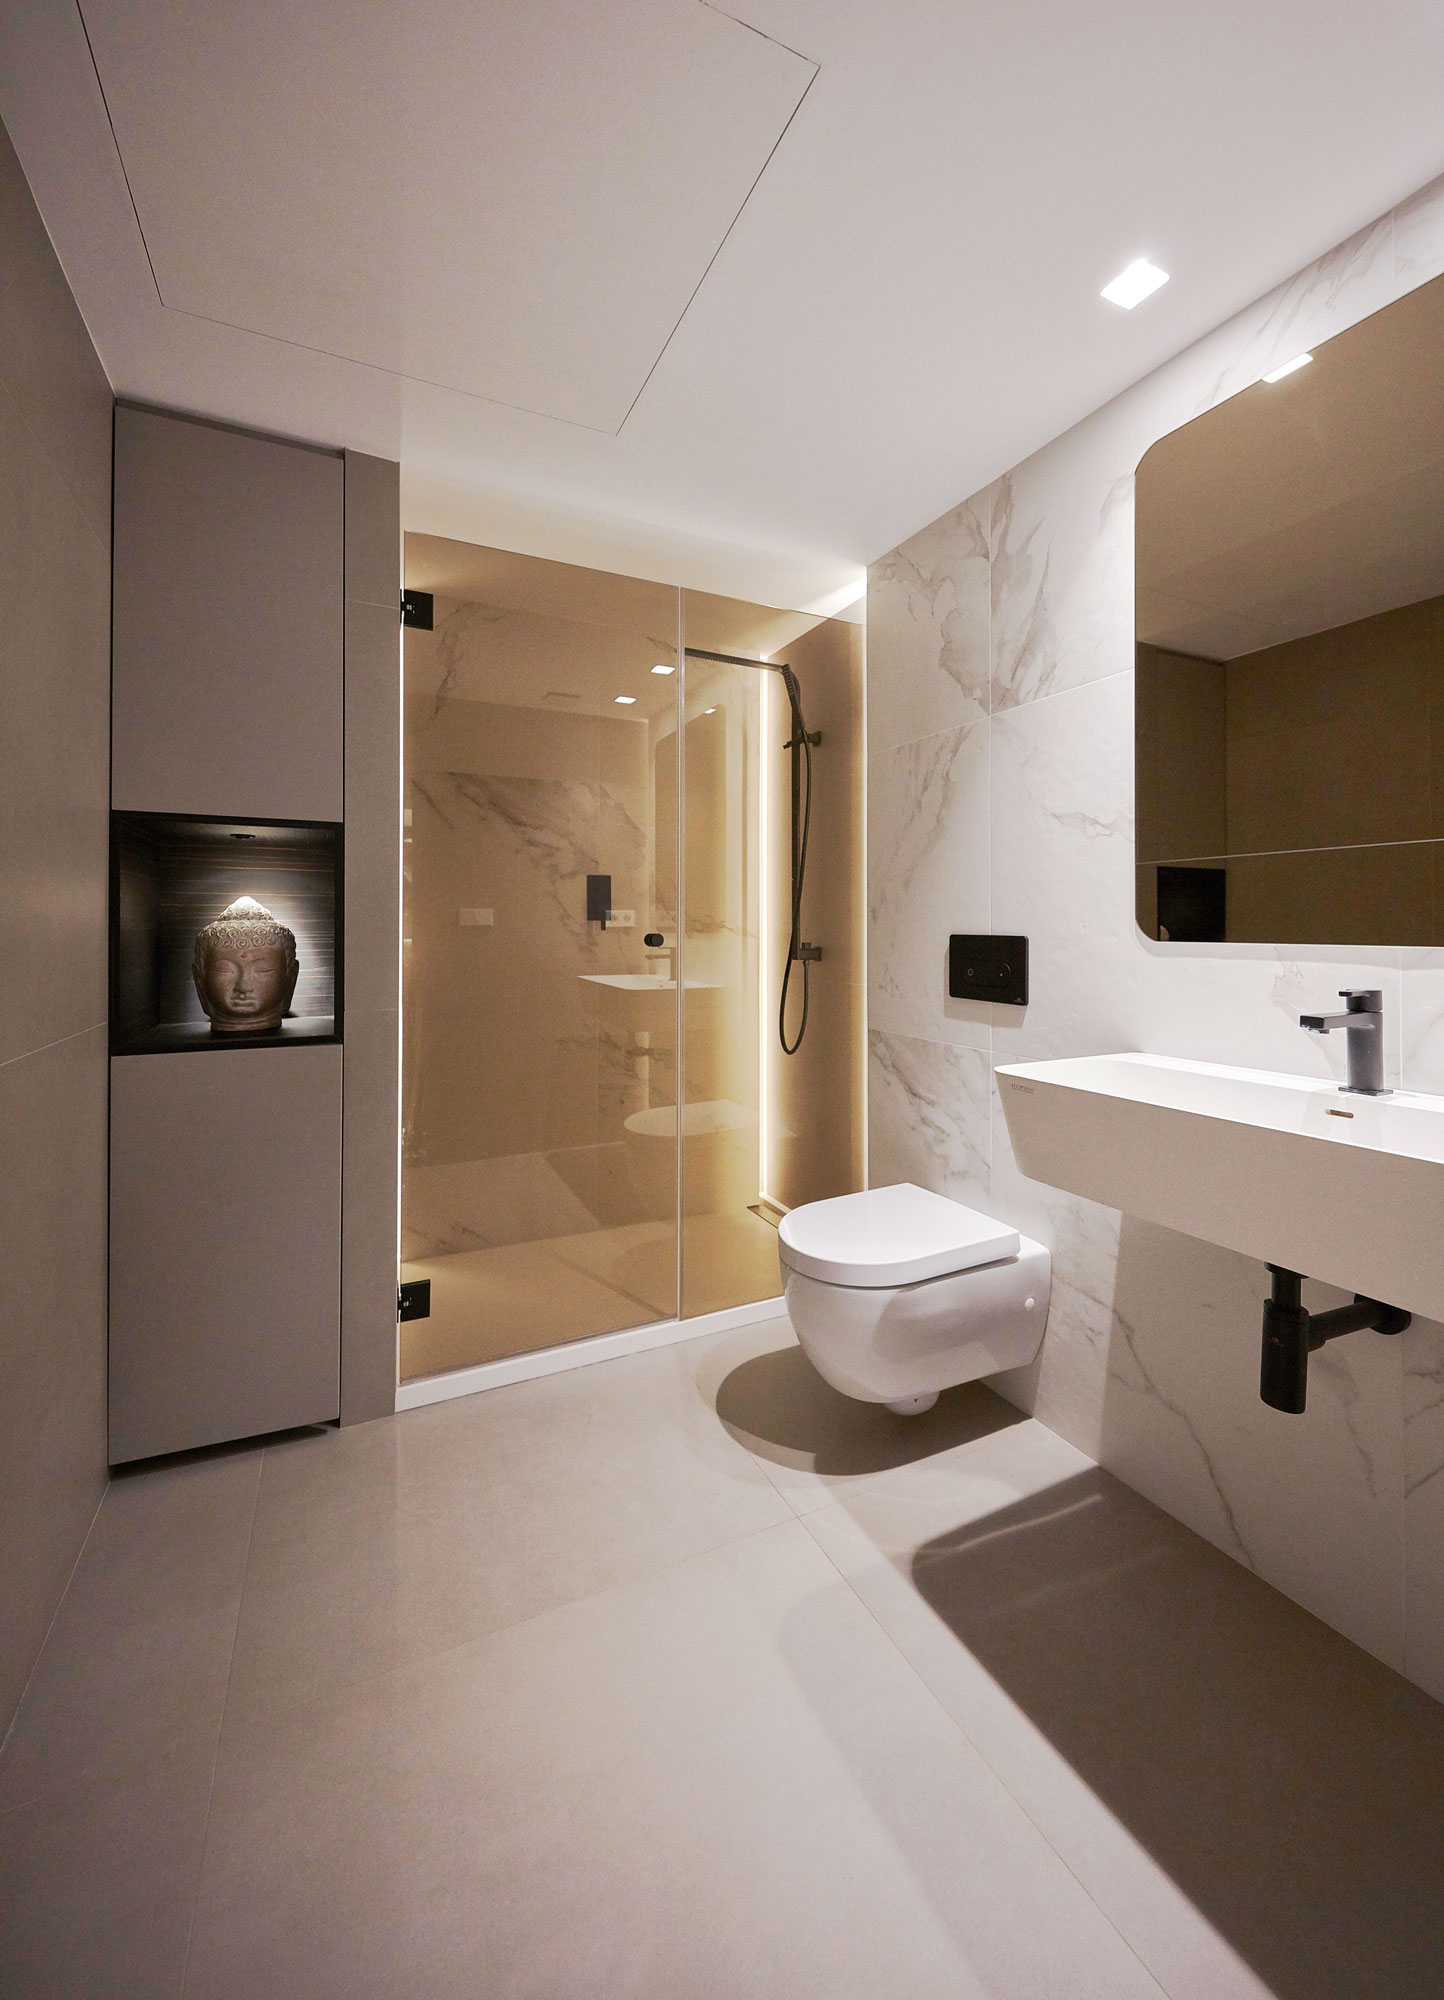 proyecto interiorismo atico madrid estudio interioristas valencia diseño espacios mobiliario baño visitas